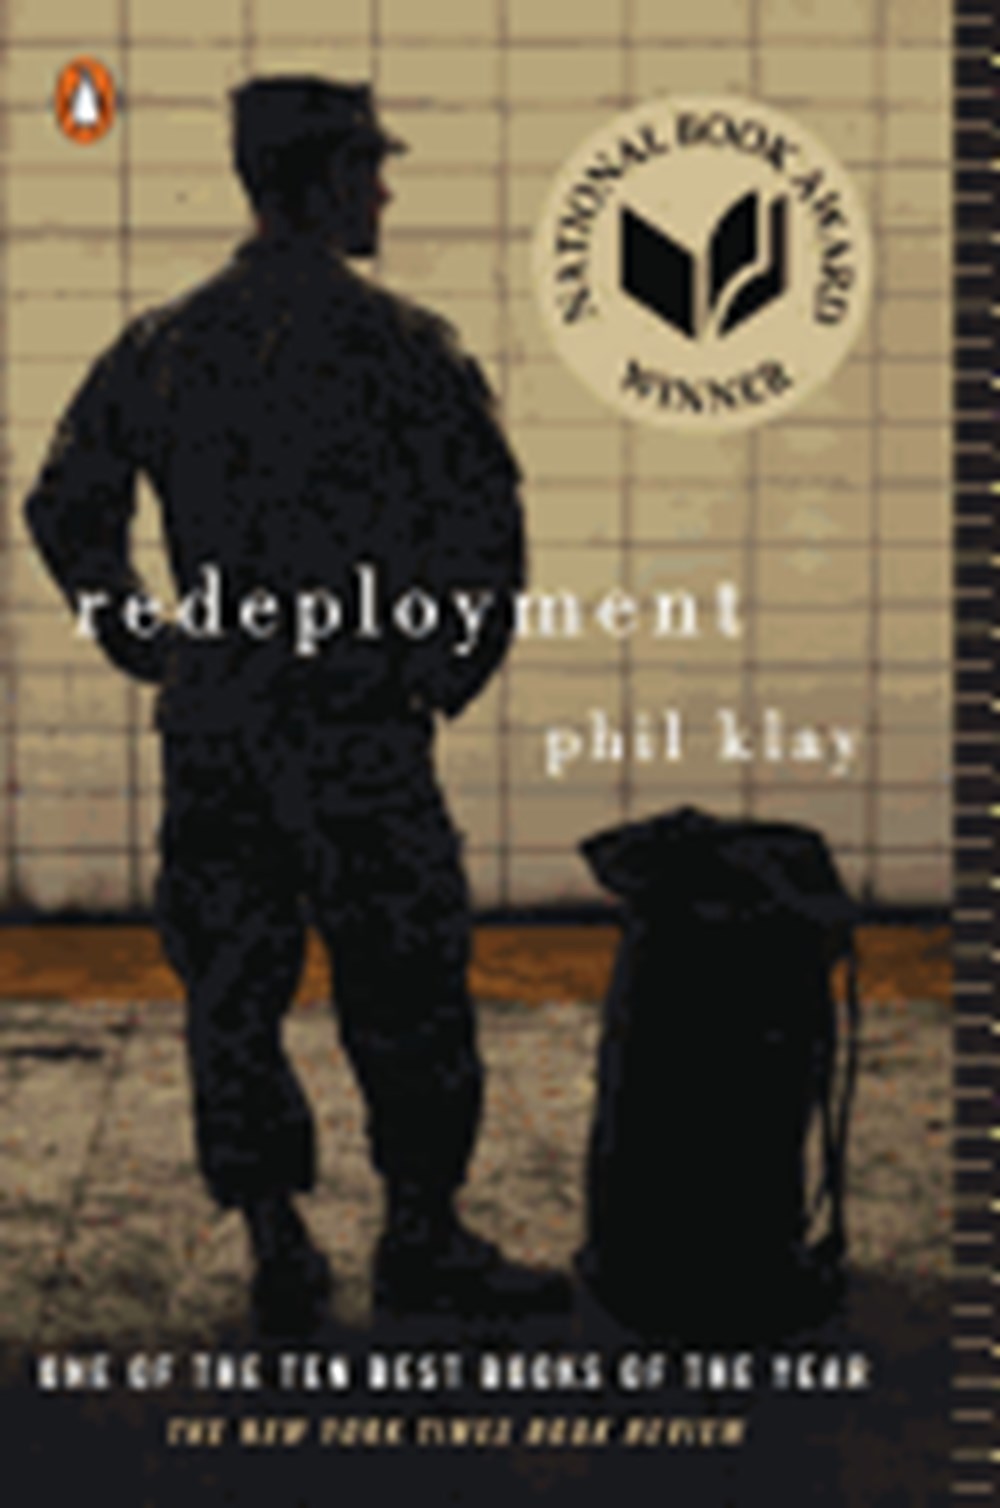 Redeployment: National Book Award Winner